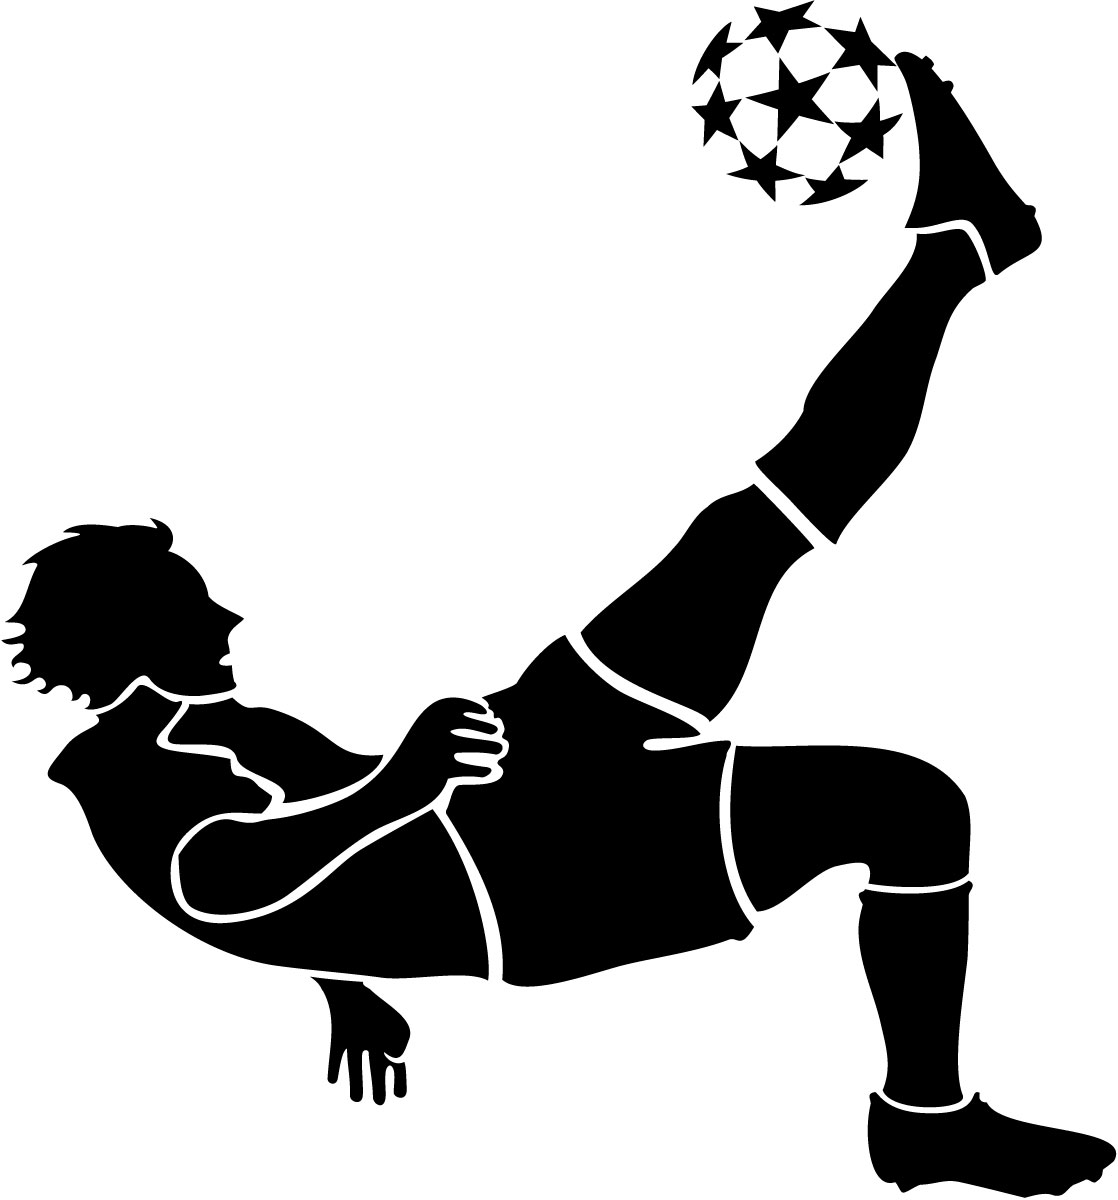 Soccer silhouette clip art 